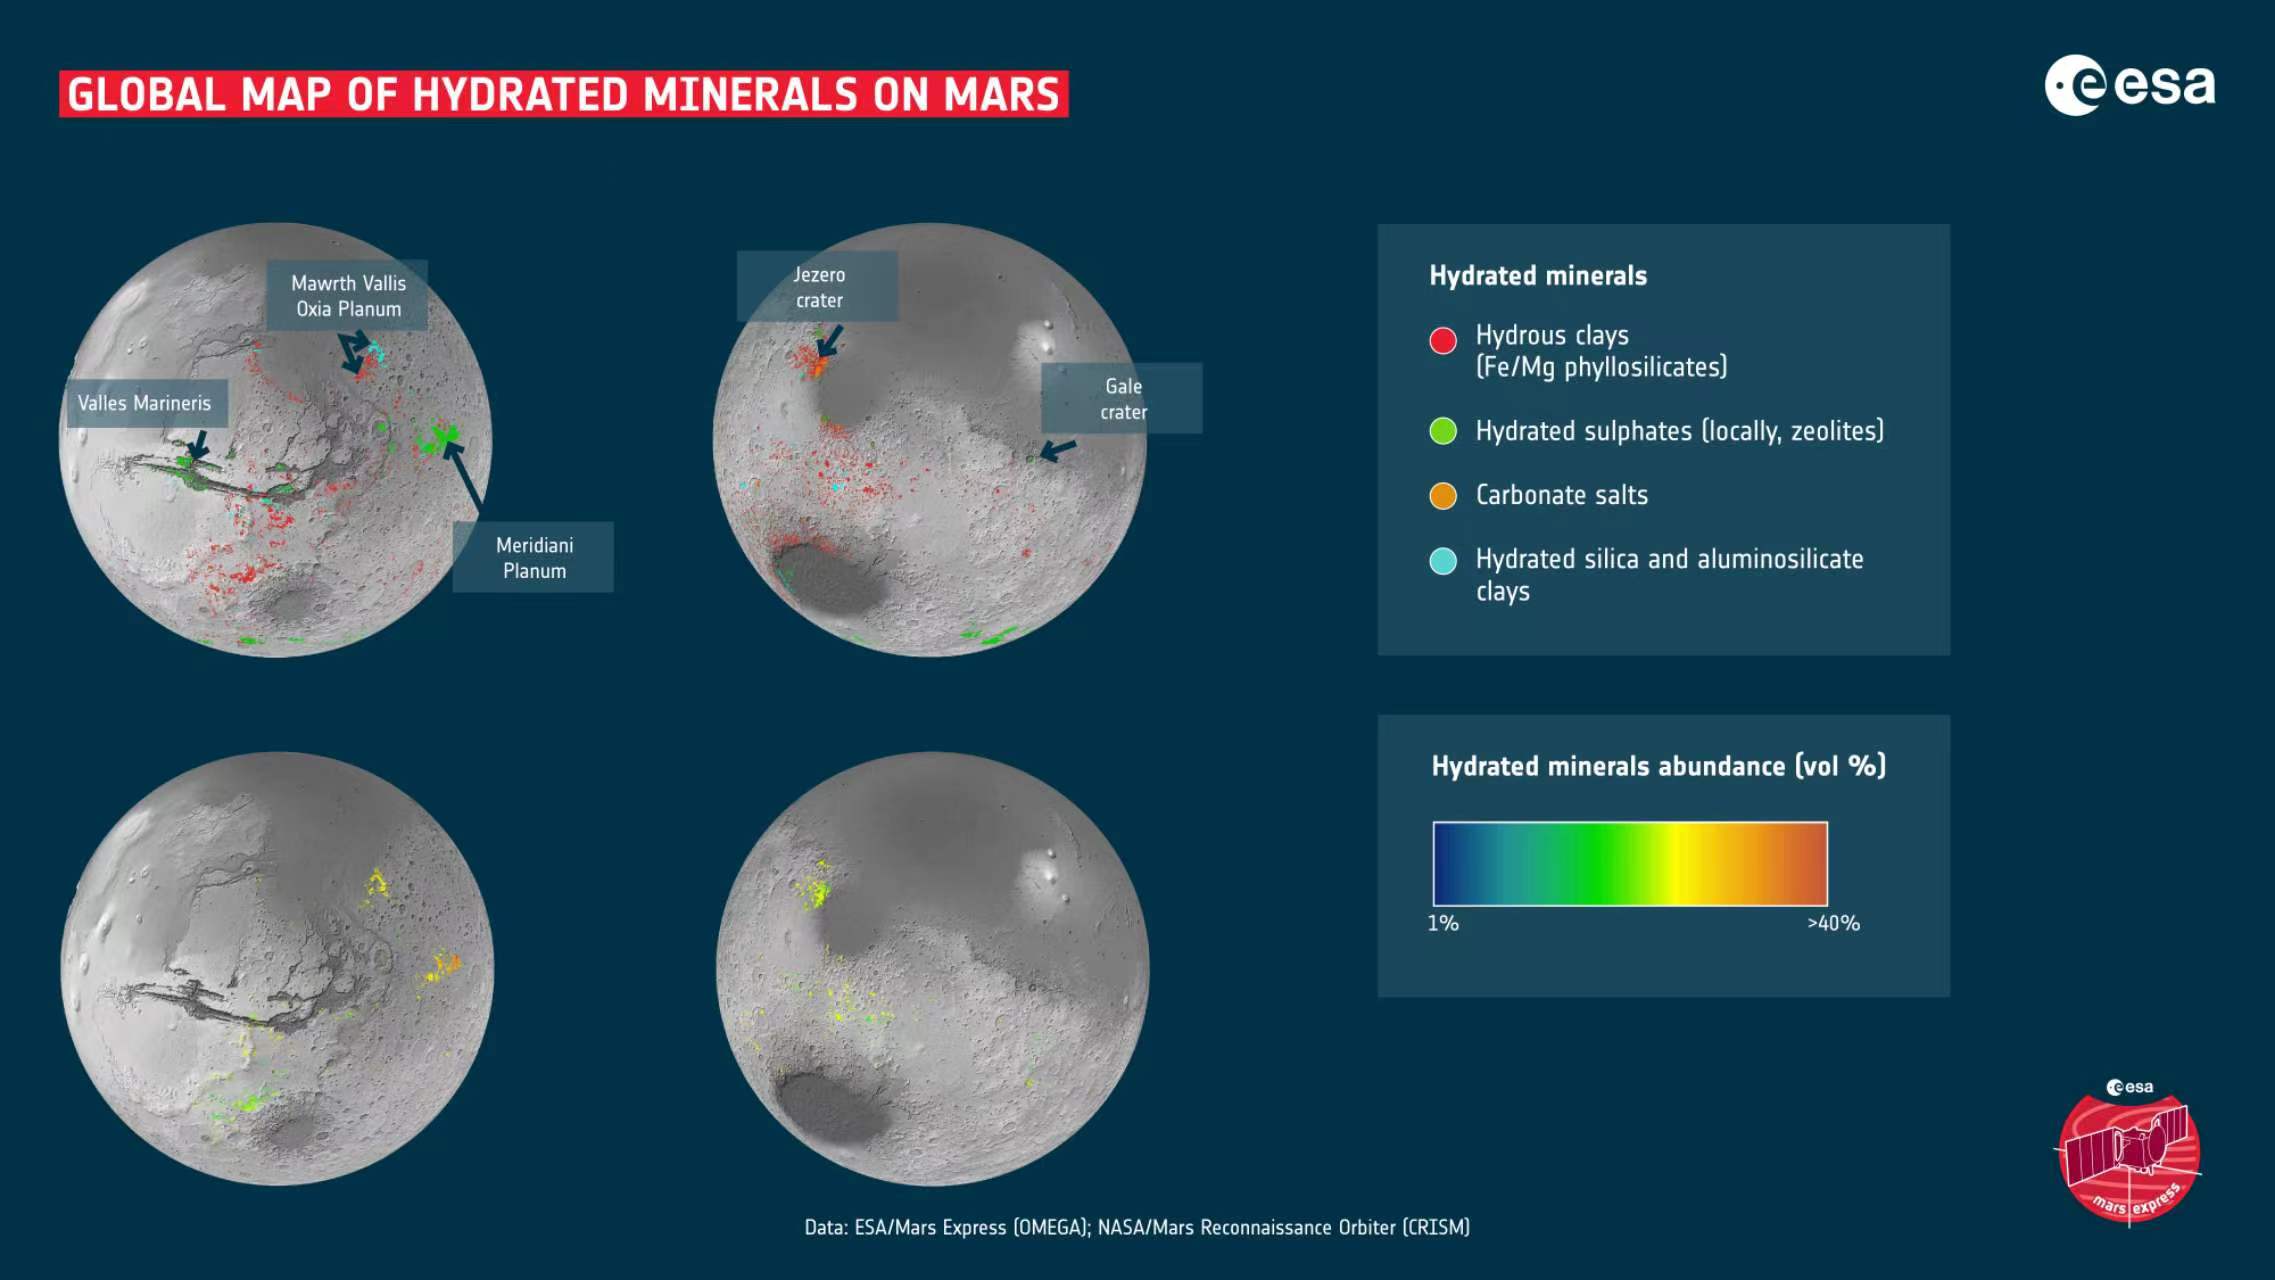 來自兩次火星任務的數據被用來繪製火星上第一張詳細的水合礦床全球地圖。這些礦物主要是粘土和鹽，可以用來描述地球各個地區的水歷史。大多數情況下，粘土是在火星早期潮濕時期形成的，而今天仍然可見的許多鹽是隨著水逐漸乾涸而產生的。 地圖上顯示了各種著陸點和感興趣的地區。 Mawrth Vallis 是一條古老的流出水道，富含粘土。 Oxia Planum 是另一個富含粘土的地區，已被選為歐空局 Rosalind Franklin 漫遊者的著陸點。子午線平原橫跨火星赤道，是 2004 年 NASA 火星探測車機遇號的著陸點。馬里內裏斯山谷是太陽系中最大的峽谷之一。蓋爾隕石坑和耶澤羅隕石坑分別是2012年和 2020 年 NASA 好奇號和毅力號探測器的著陸點。 地圖上顯示的粘土包括鐵和鎂層狀矽酸鹽、沸石和鋁矽酸鹽粘土。所示的鹽是由碳和氧組成的碳酸鹽。